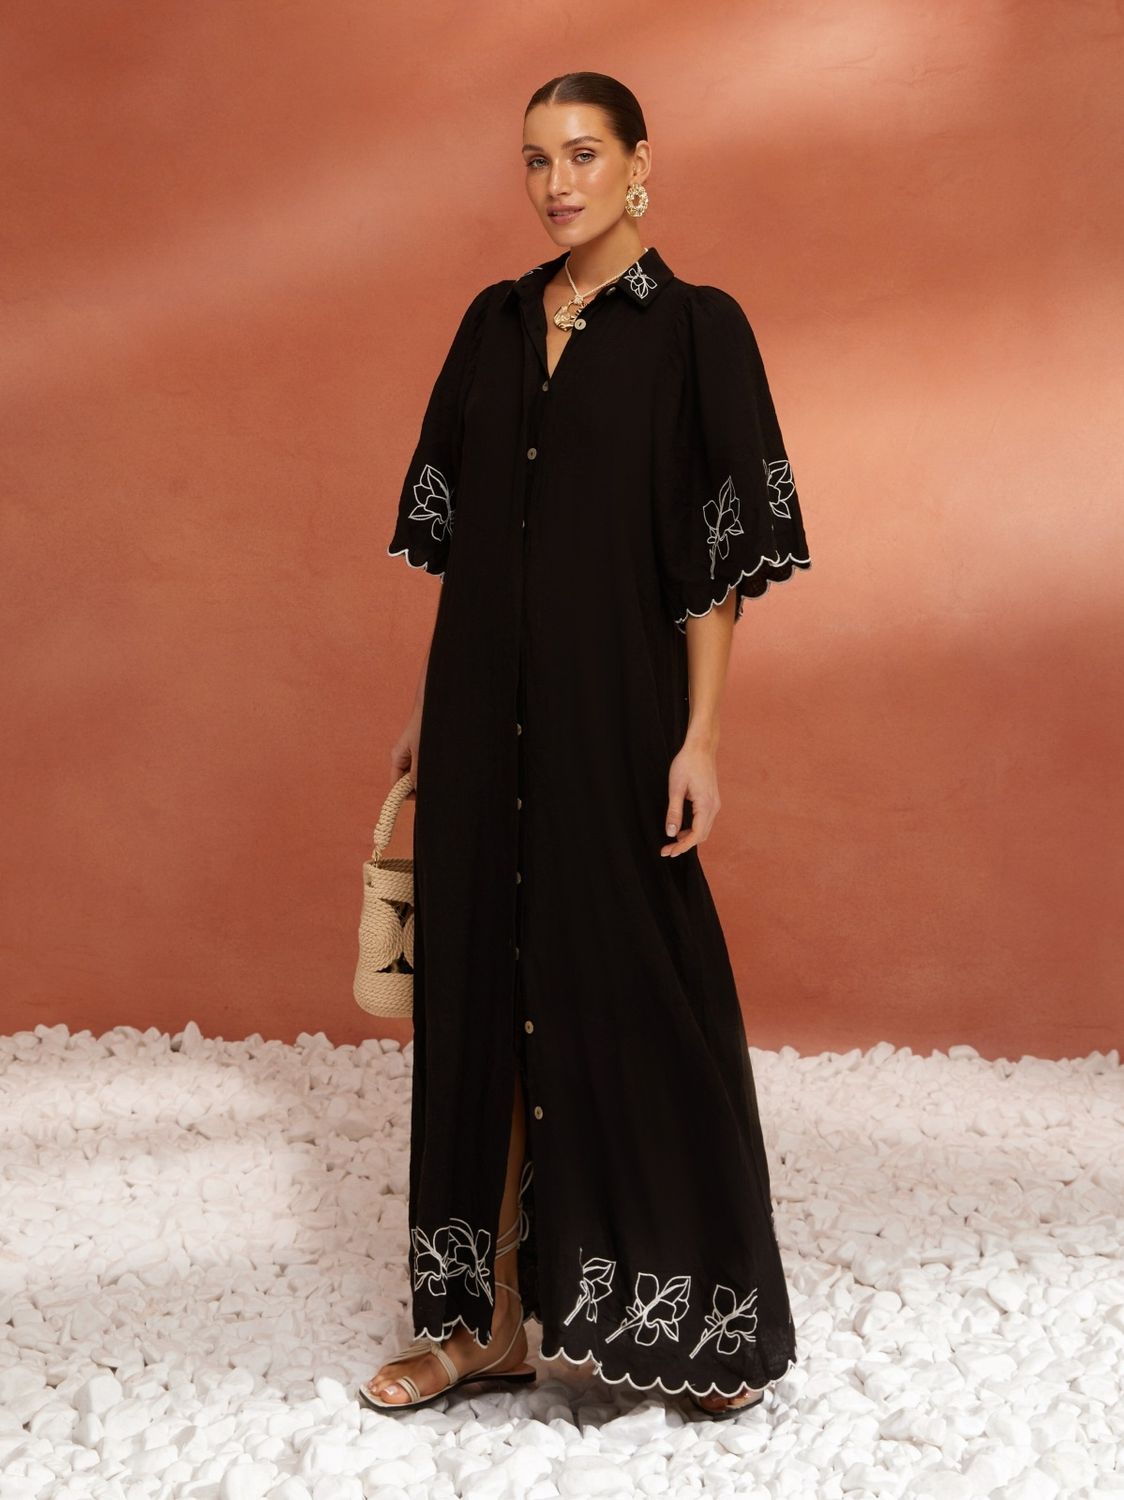 Чорне лляне плаття сорочка на літо з вишивкою - фото